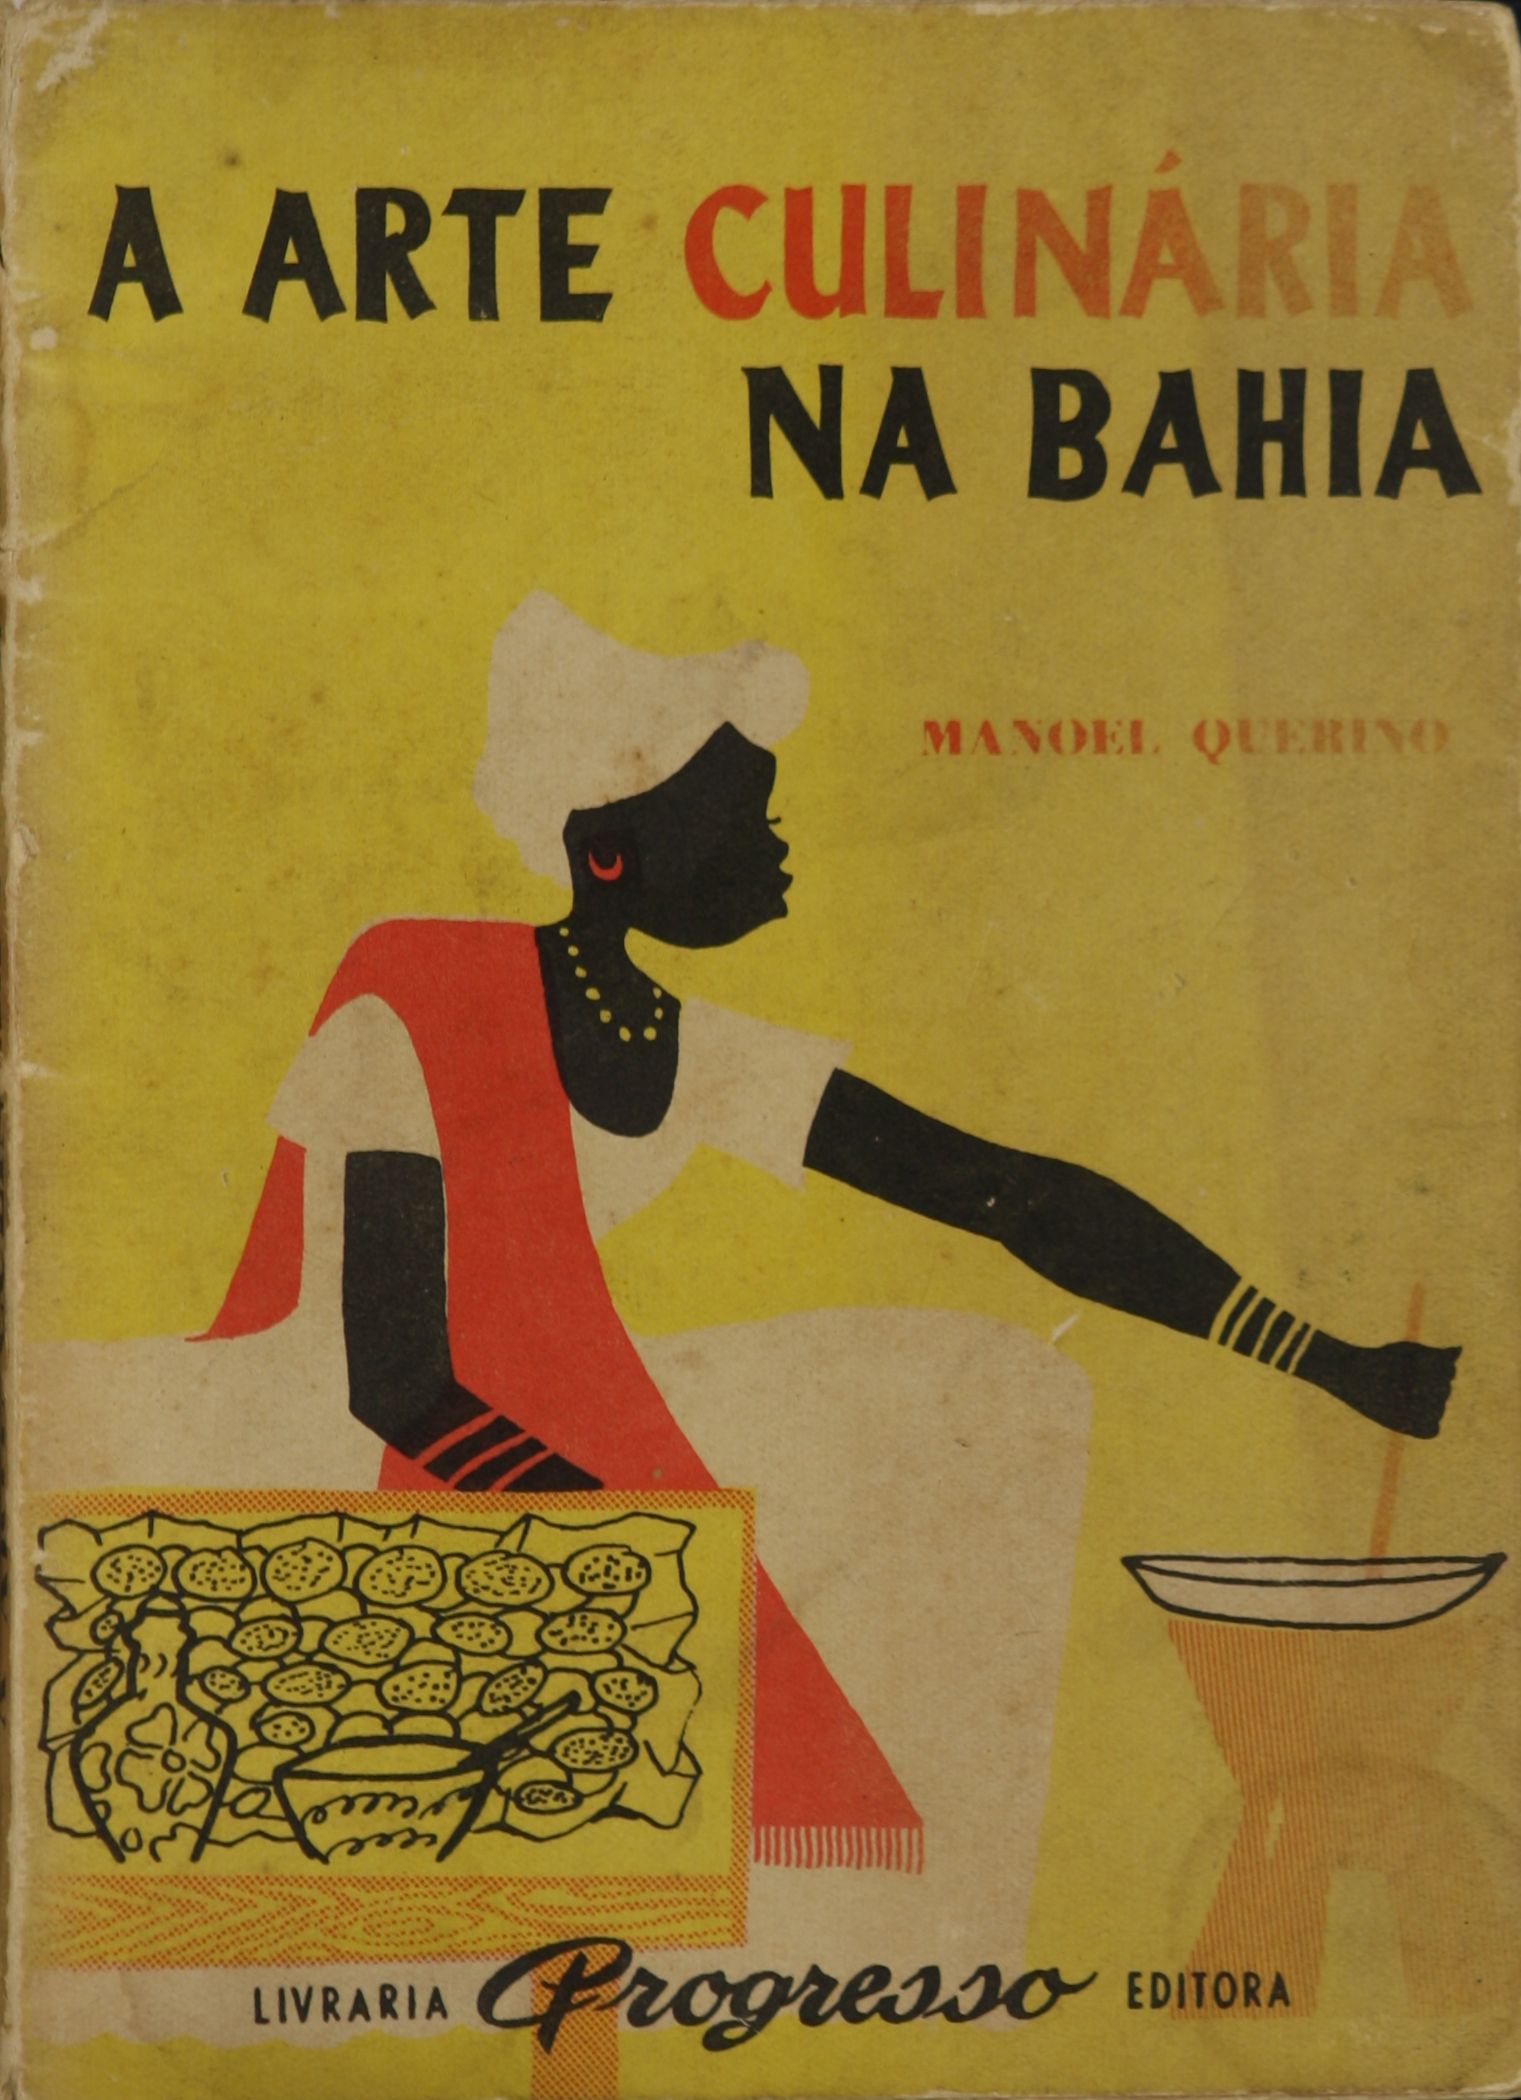 Manoel Querino, A arte culinária na Bahia, Salvador, Livraria Progresso editora, 1928